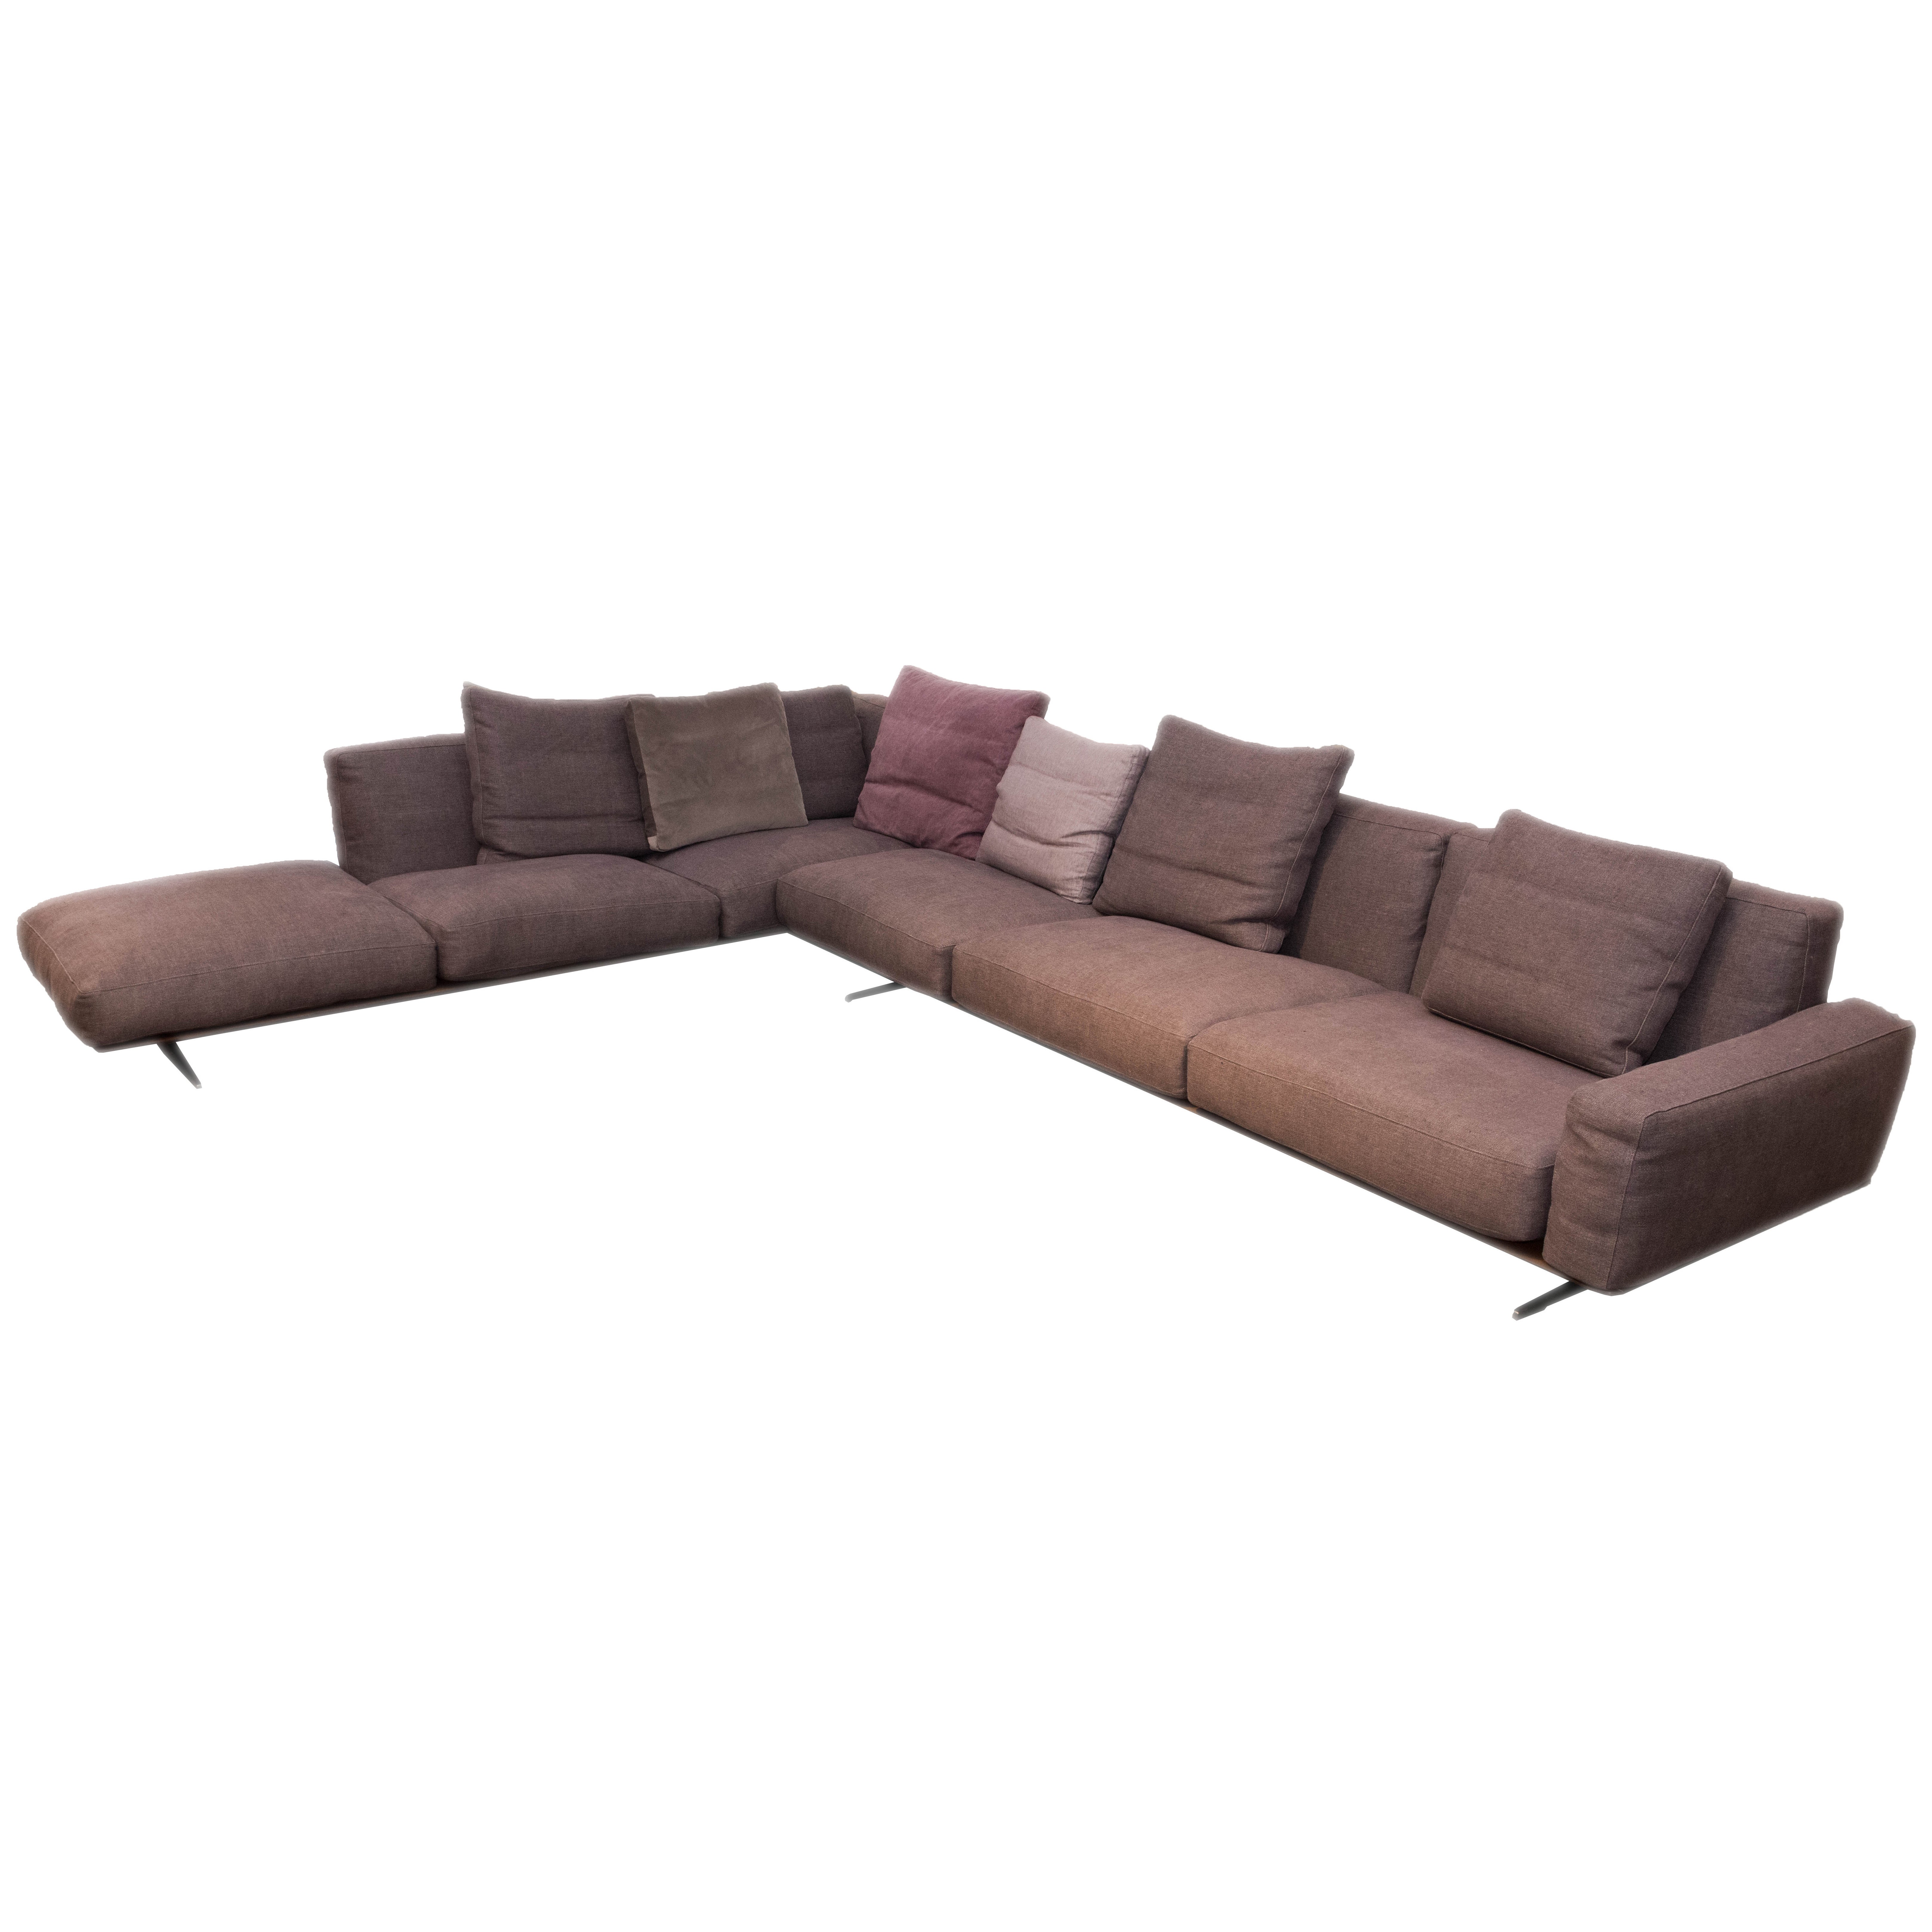 Flexform Soft Dream Sectional Sofa For Sale